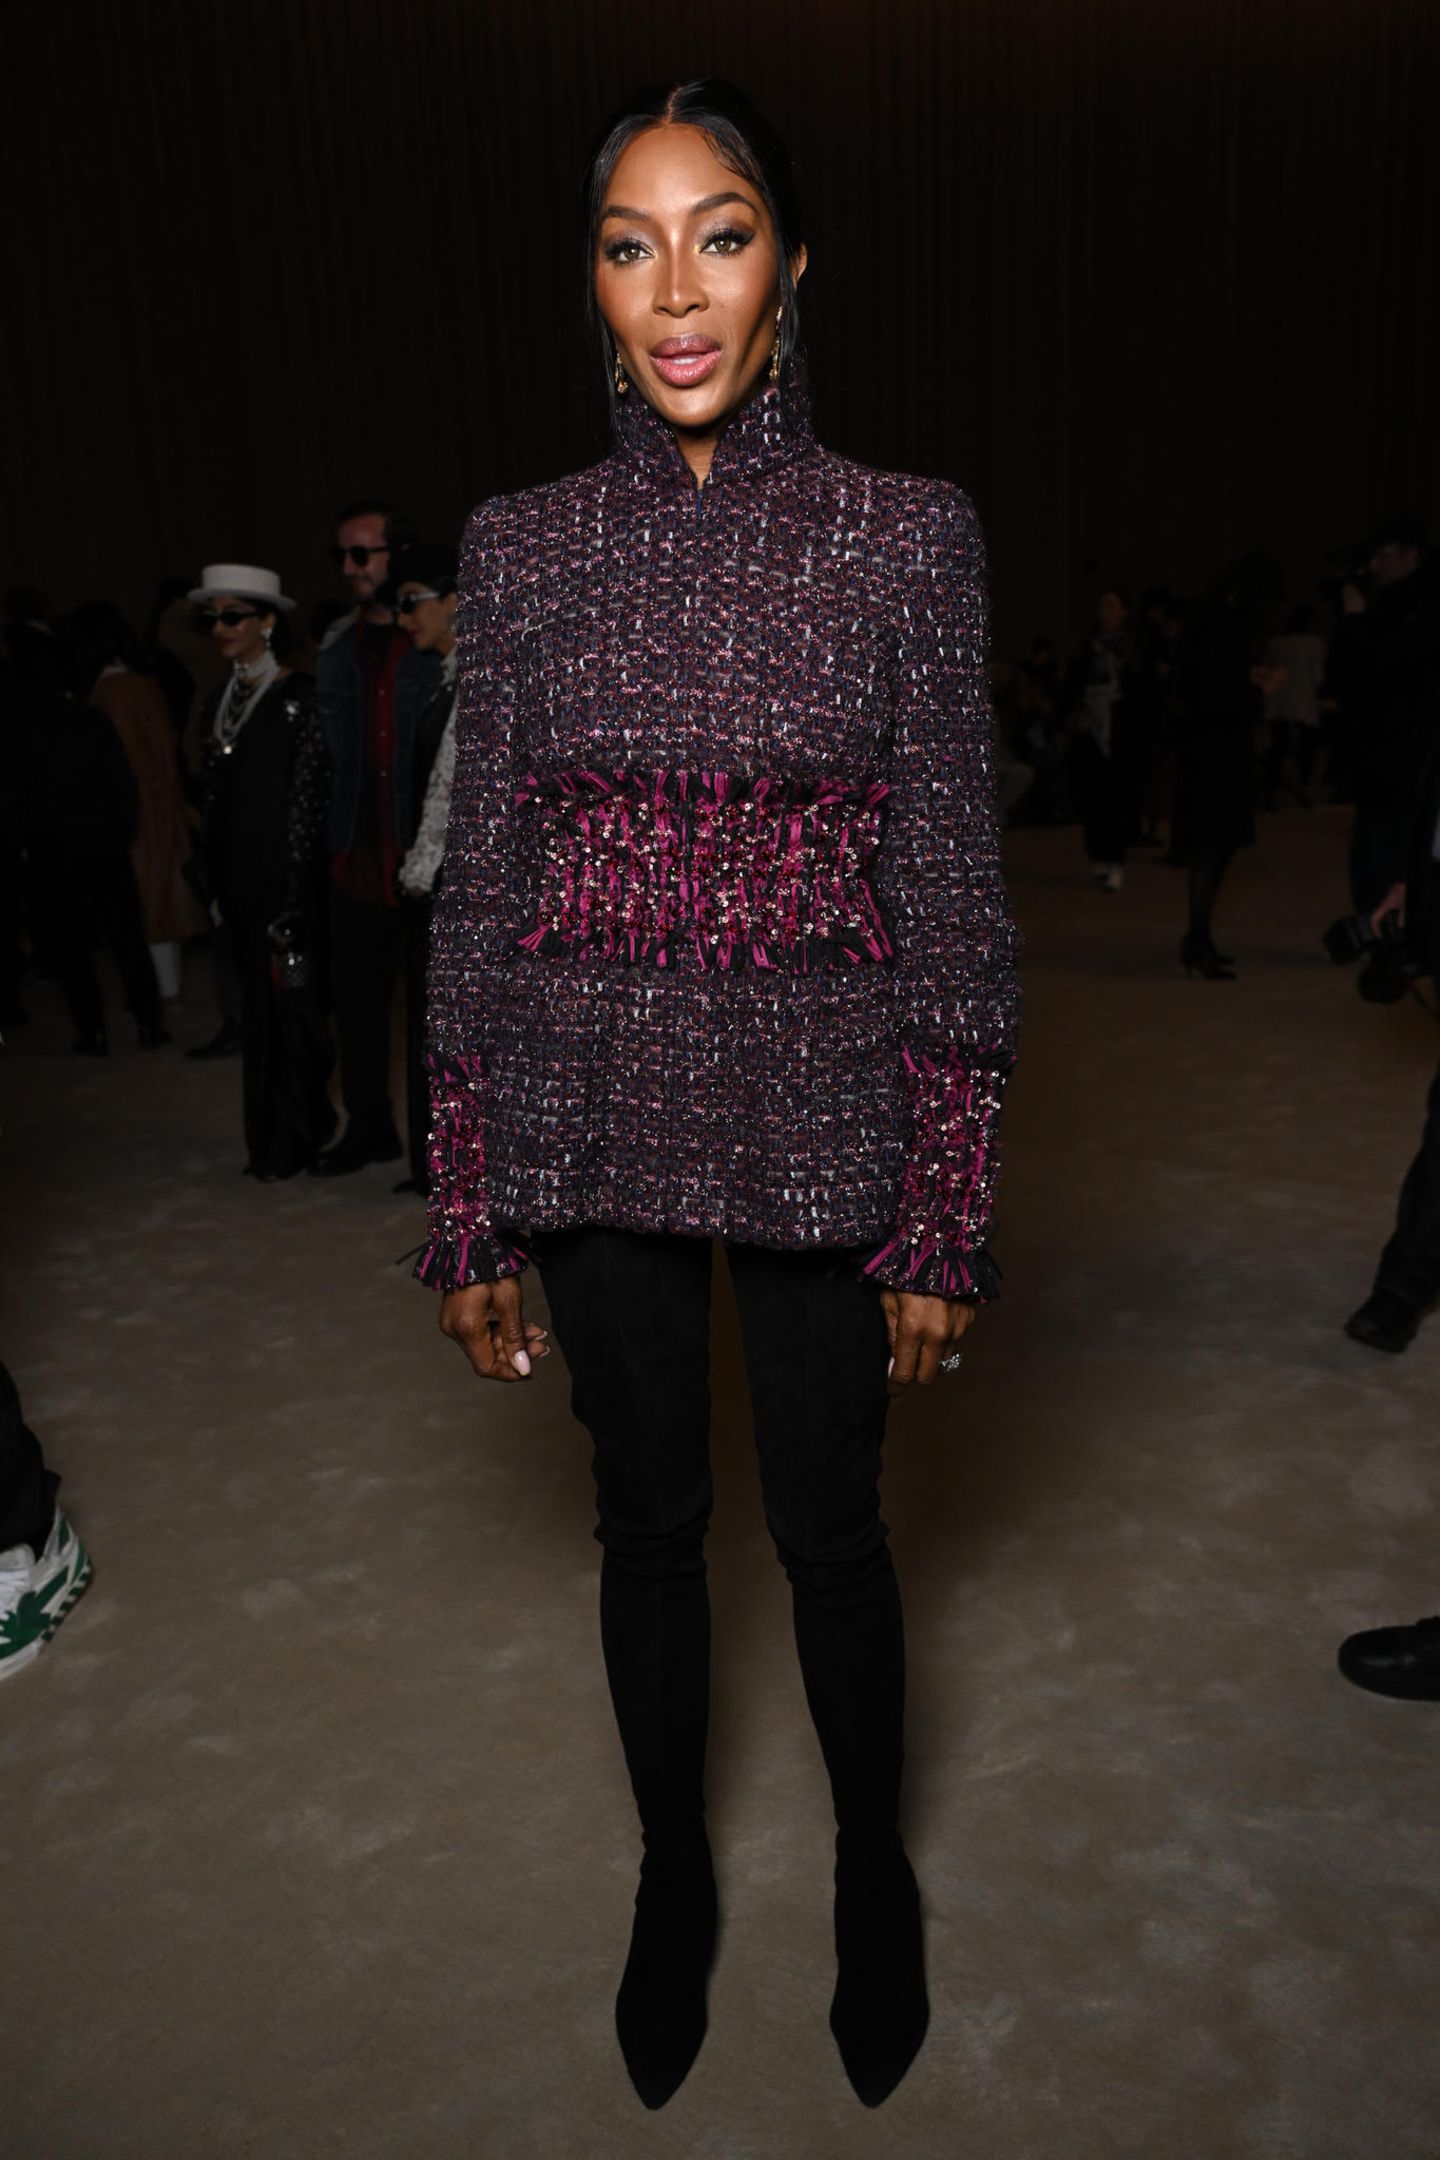 Wie aus einem Guss! Naomi Campbell wählt für die Chanel Haute Couture Show gedeckte Farben und kombiniert eine eng anliegende Hose mit integrierten Stiefeln mit hochgeschlossener weinroter Jacke und langen Ohrringen. 